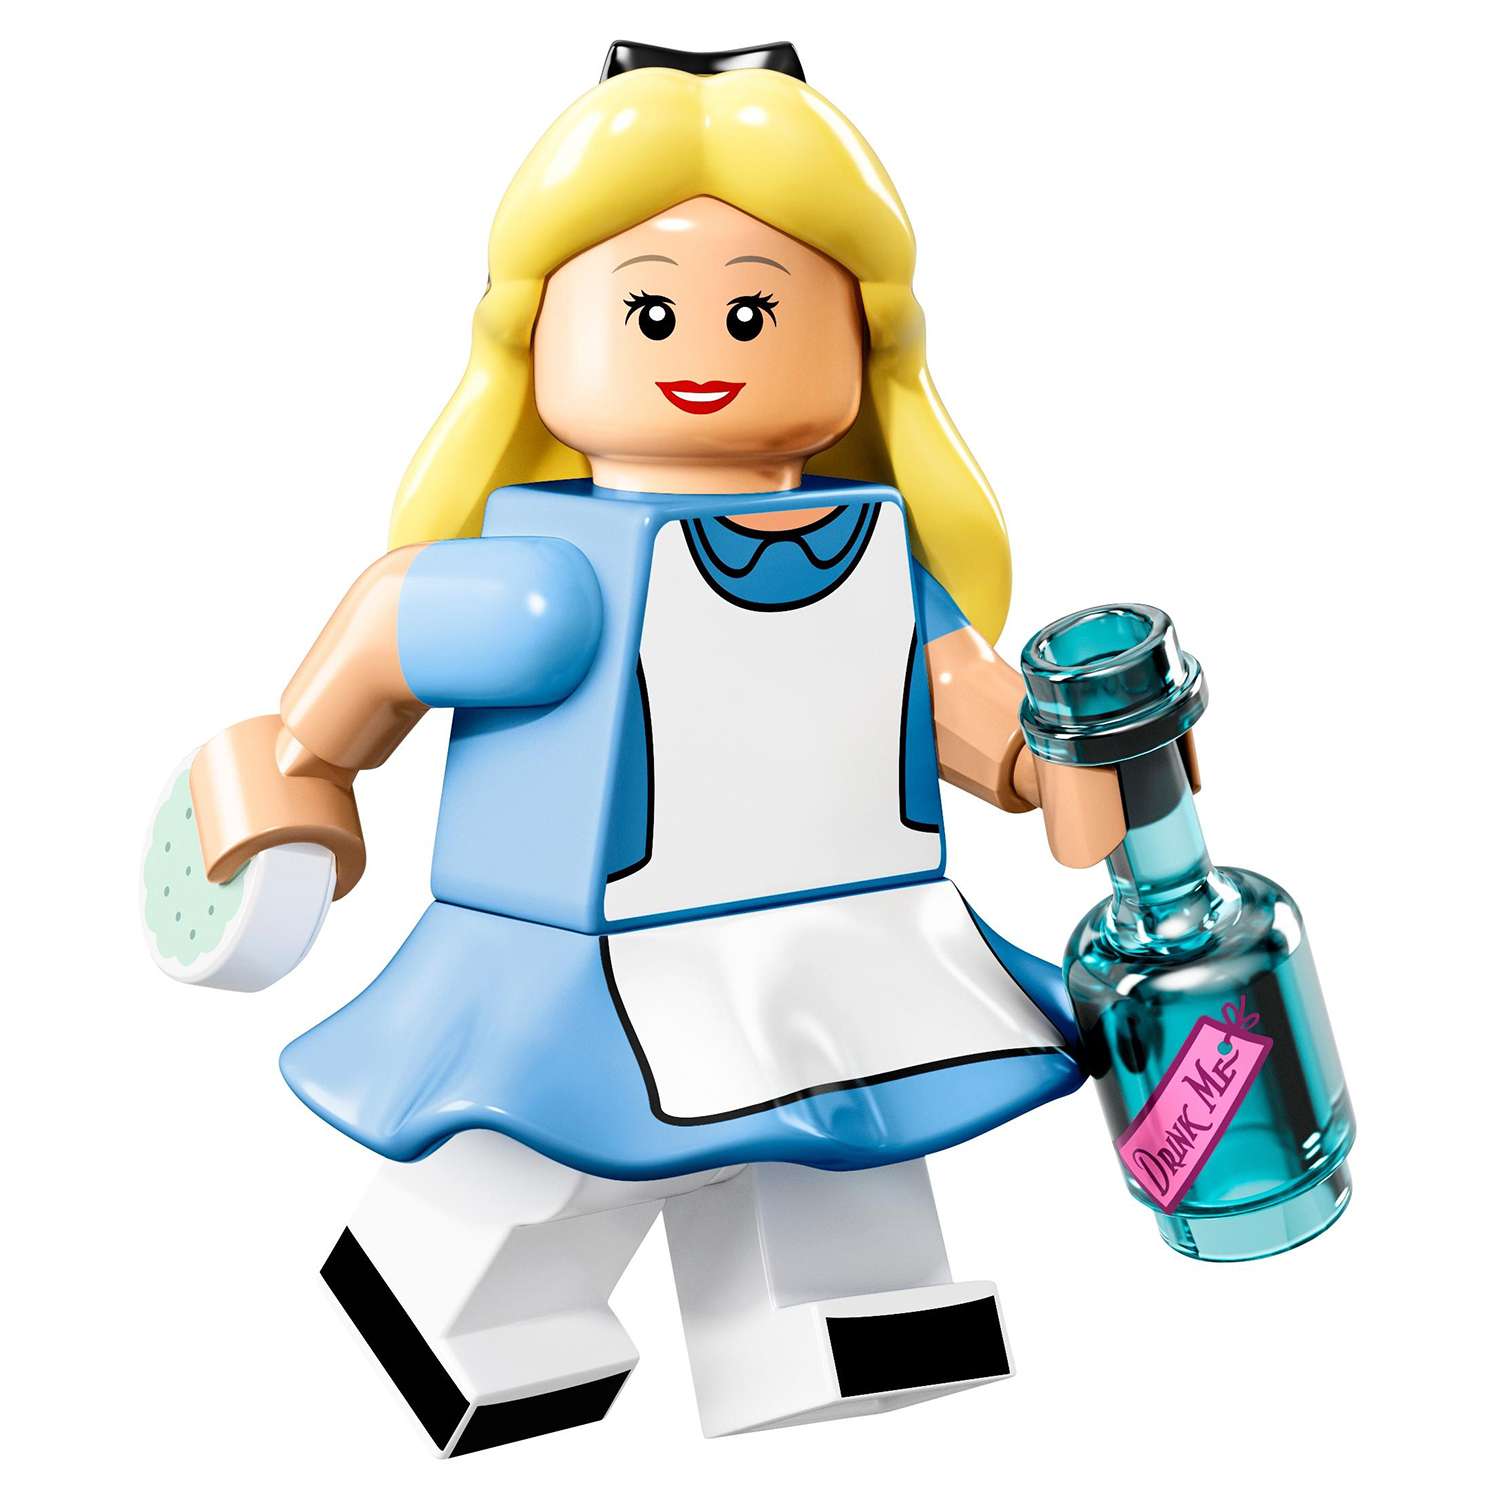 Конструктор LEGO Minifigures Минифигурки LEGO®, серия Дисней (71012) - фото 20